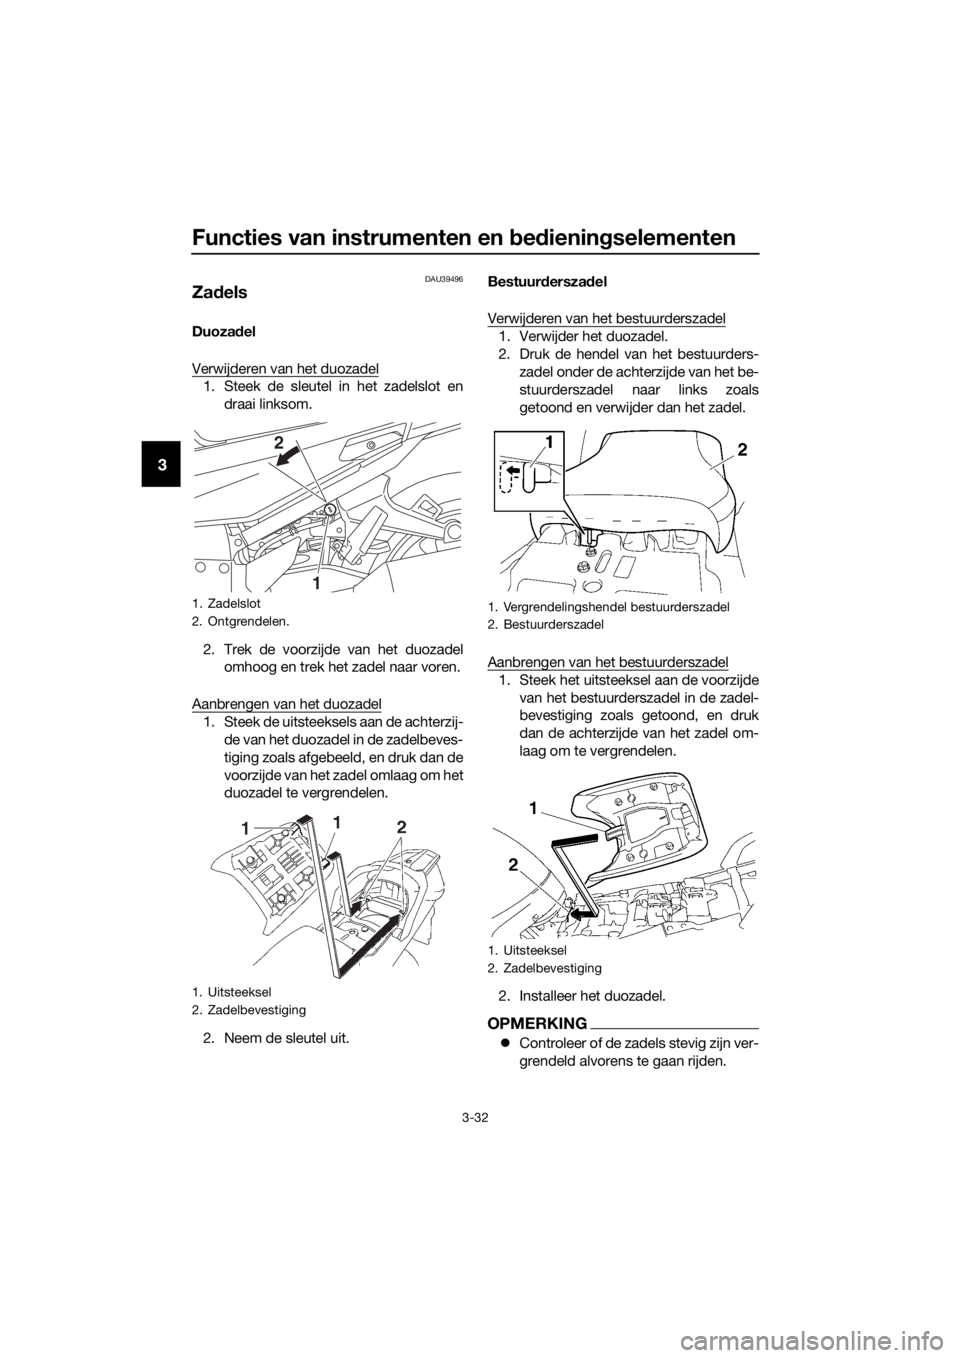 YAMAHA FJR1300AE 2016  Instructieboekje (in Dutch) Functies van instrumenten en bed iening selementen
3-32
3
DAU39496
Zadels
Duoza del
Verwijderen van het duozadel
1. Steek de sleutel in het zadelslot en draai linksom.
2. Trek de voorzijde van het duo